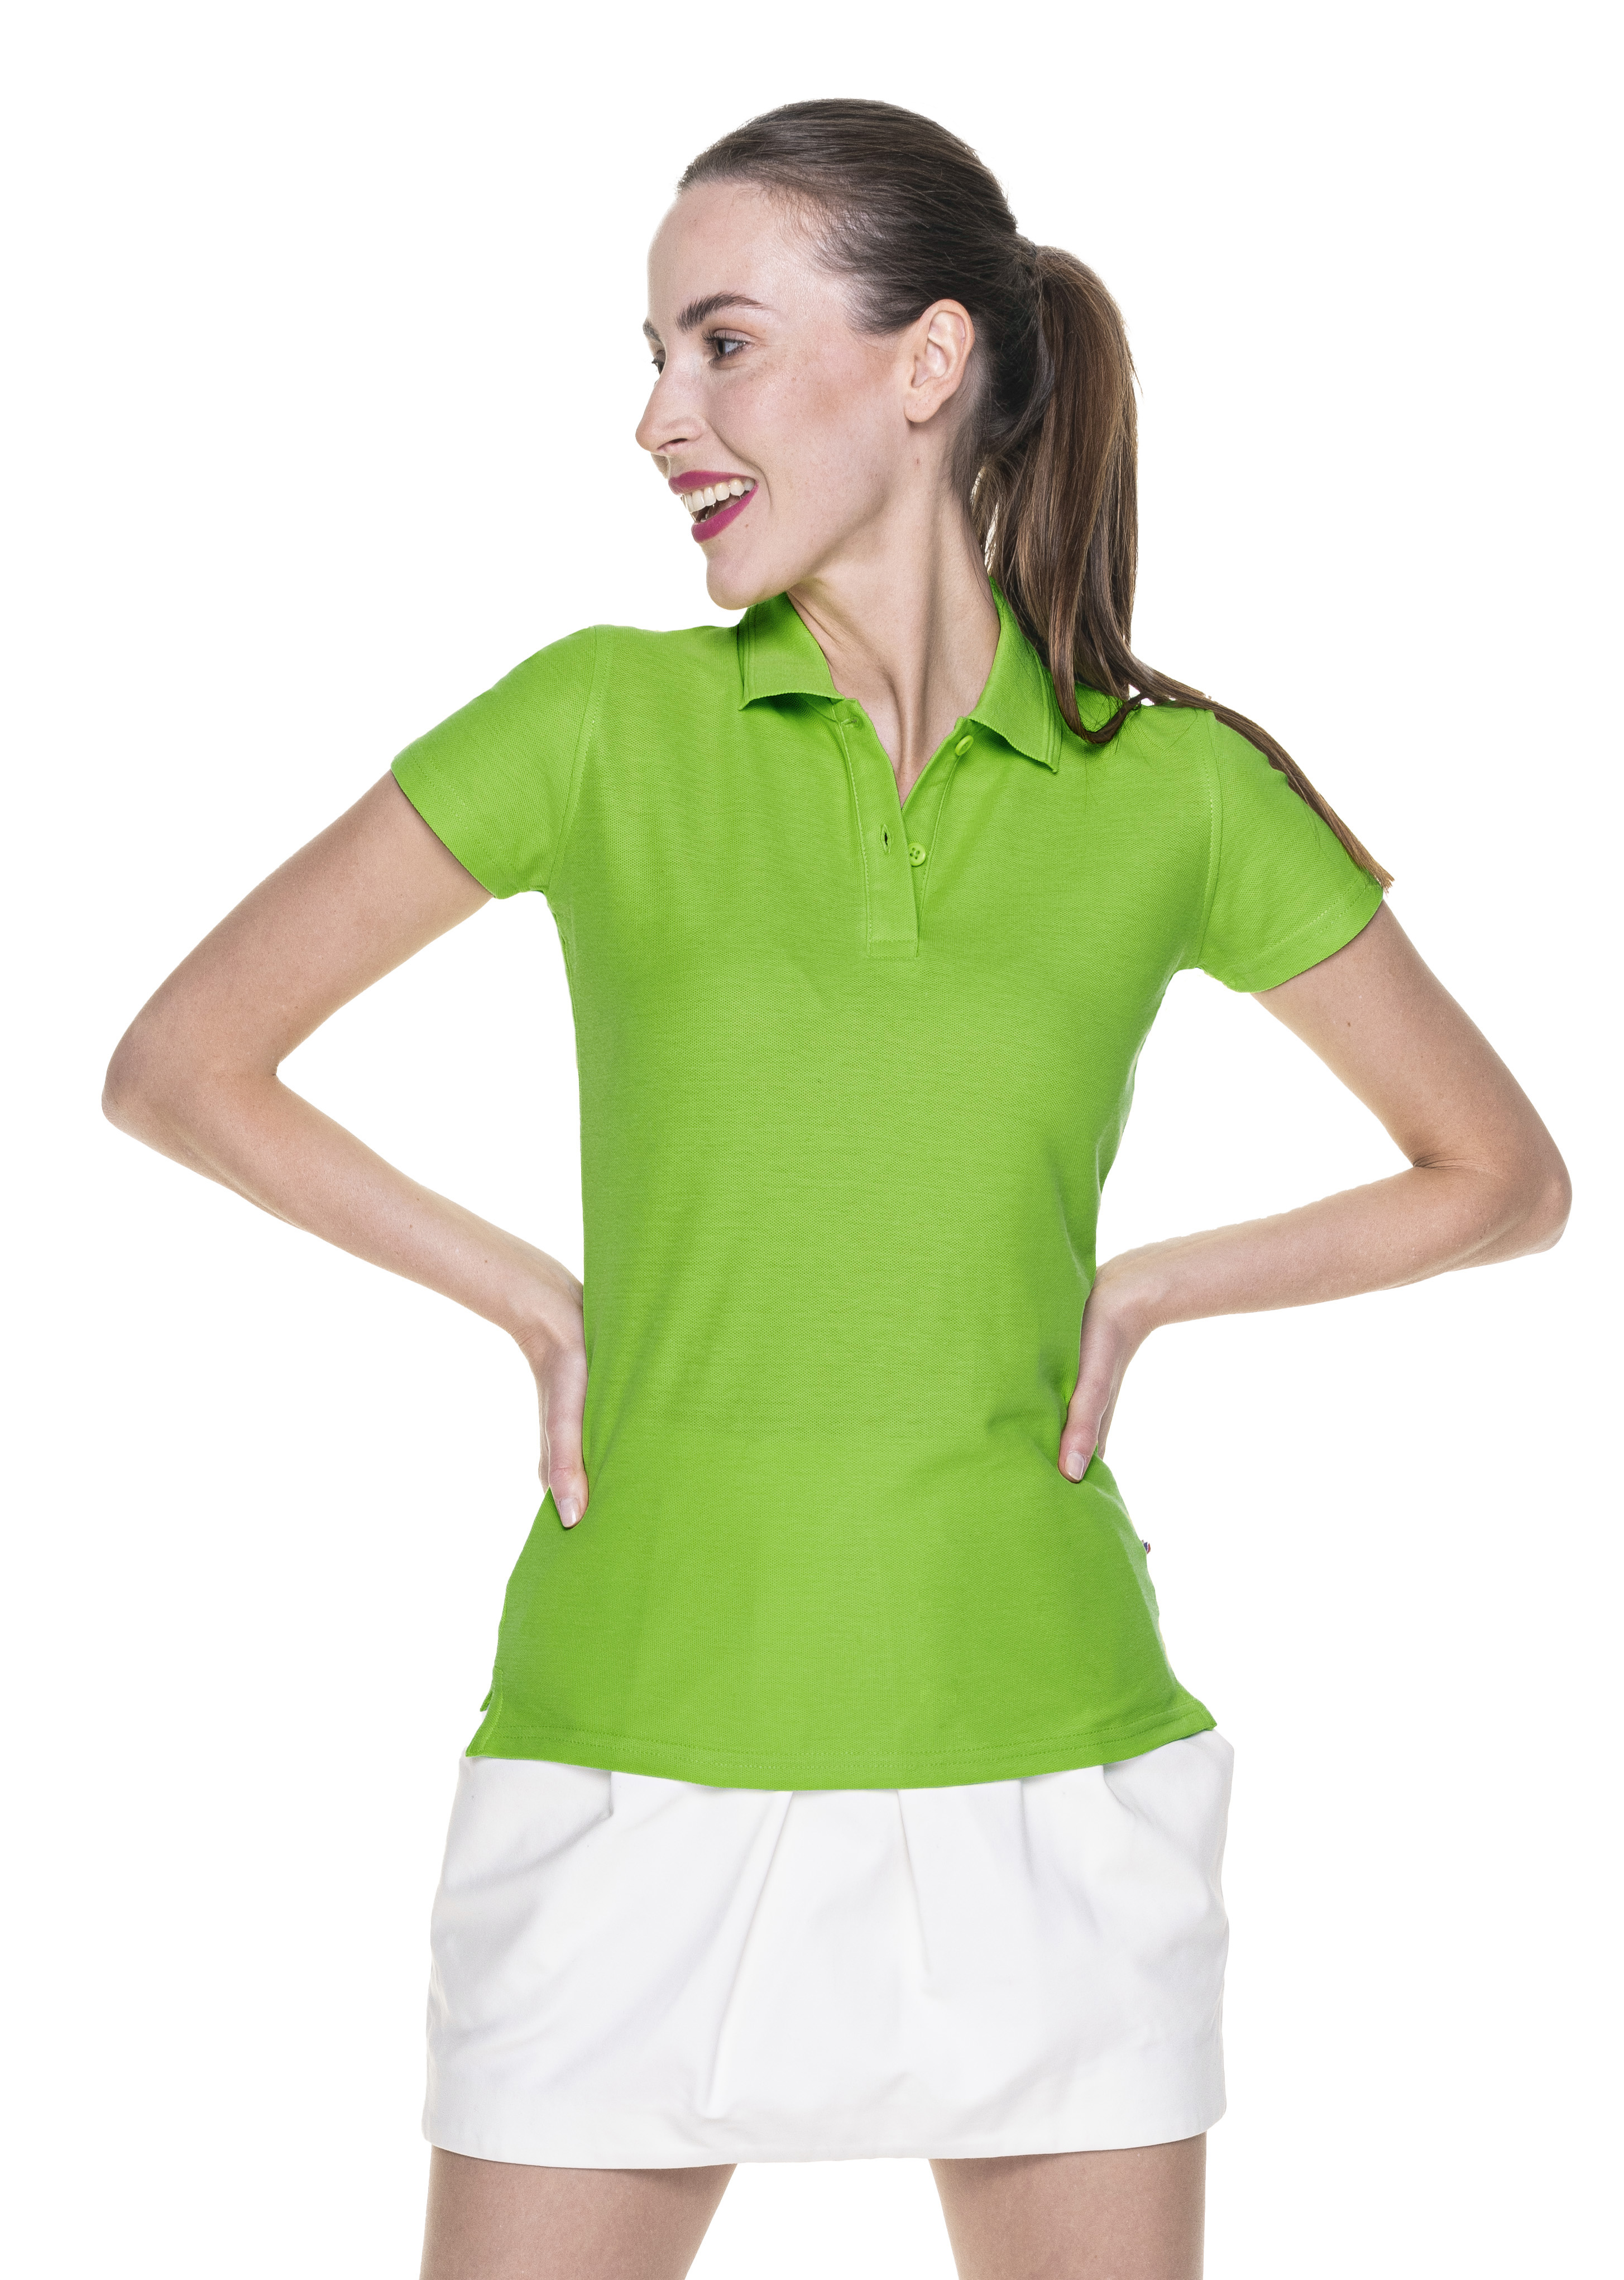 Koszulka Promostars Polo Ladies Cotton - jasnozielona